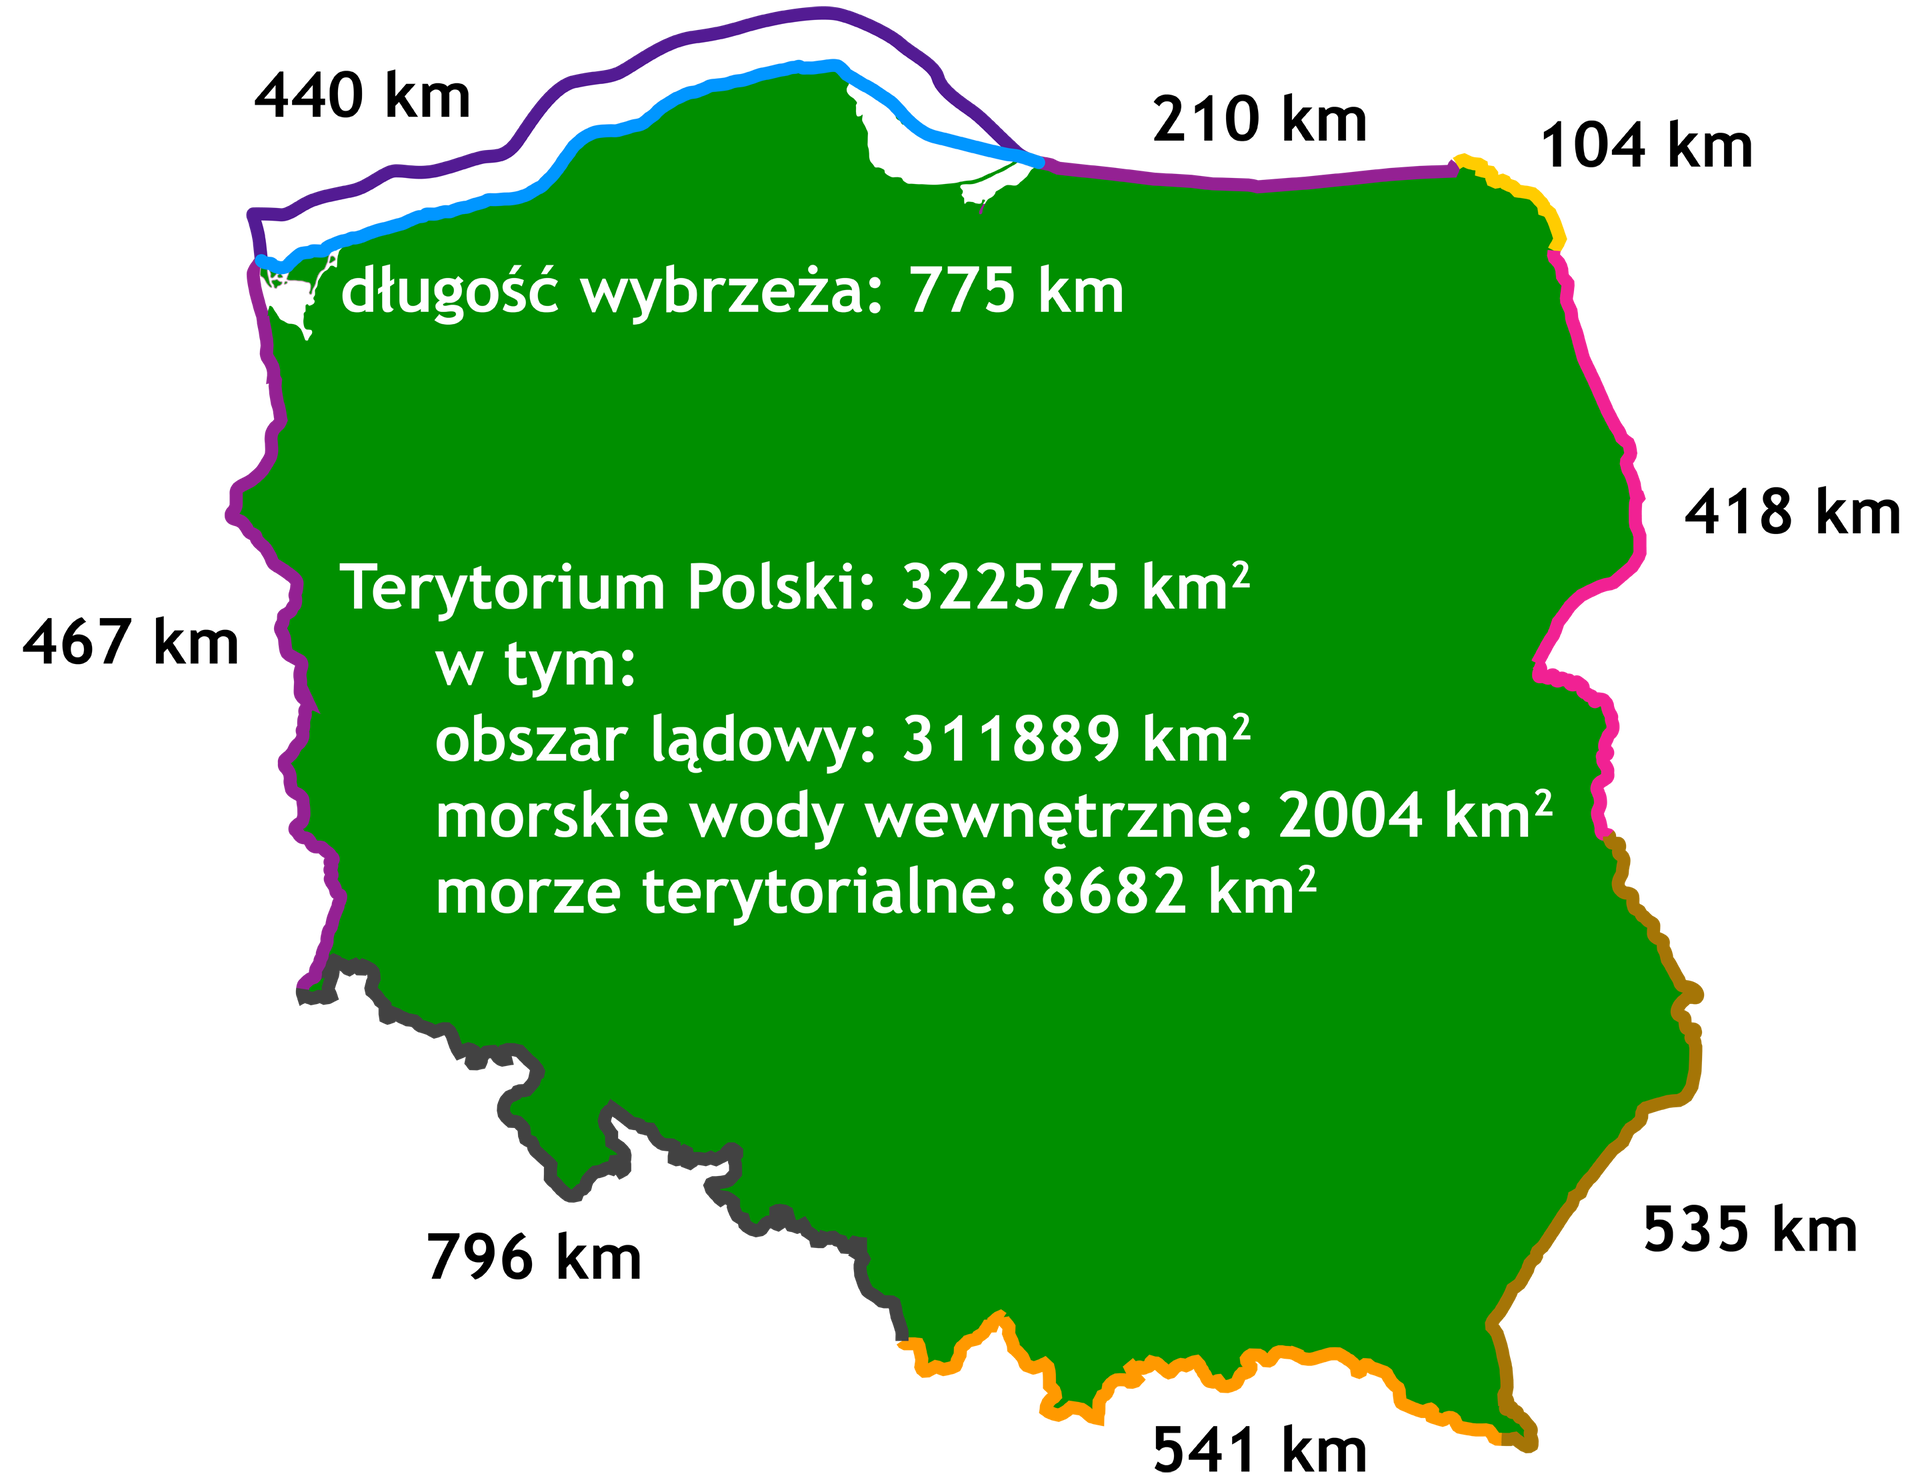 Mapa Polski z długościami granic. Terytorium Polski: 322575 kilometrów kwadratowych, w tym: obszar lądowy: 311889 kilometrów kwadratowych, morskie wody wewnętrzne: 2004 kilometry kwadratowe, morze terytorialne: 8682 kilometry kwadratowe. Długość wybrzeża 775 km. Granica z Federacją Rosyjską - 210 km. Granica z Republiką Litewską - 104 km. Granica z Republiką Białorusi - 418 km. Granica z Ukrainą - 535 km. Granica z Republiką Słowacką - 541 km. Granica z Republiką Czeską - 796 km. Granica z Republiką Federalną Niemiec - 467 km. Granica Morska - 440 km.